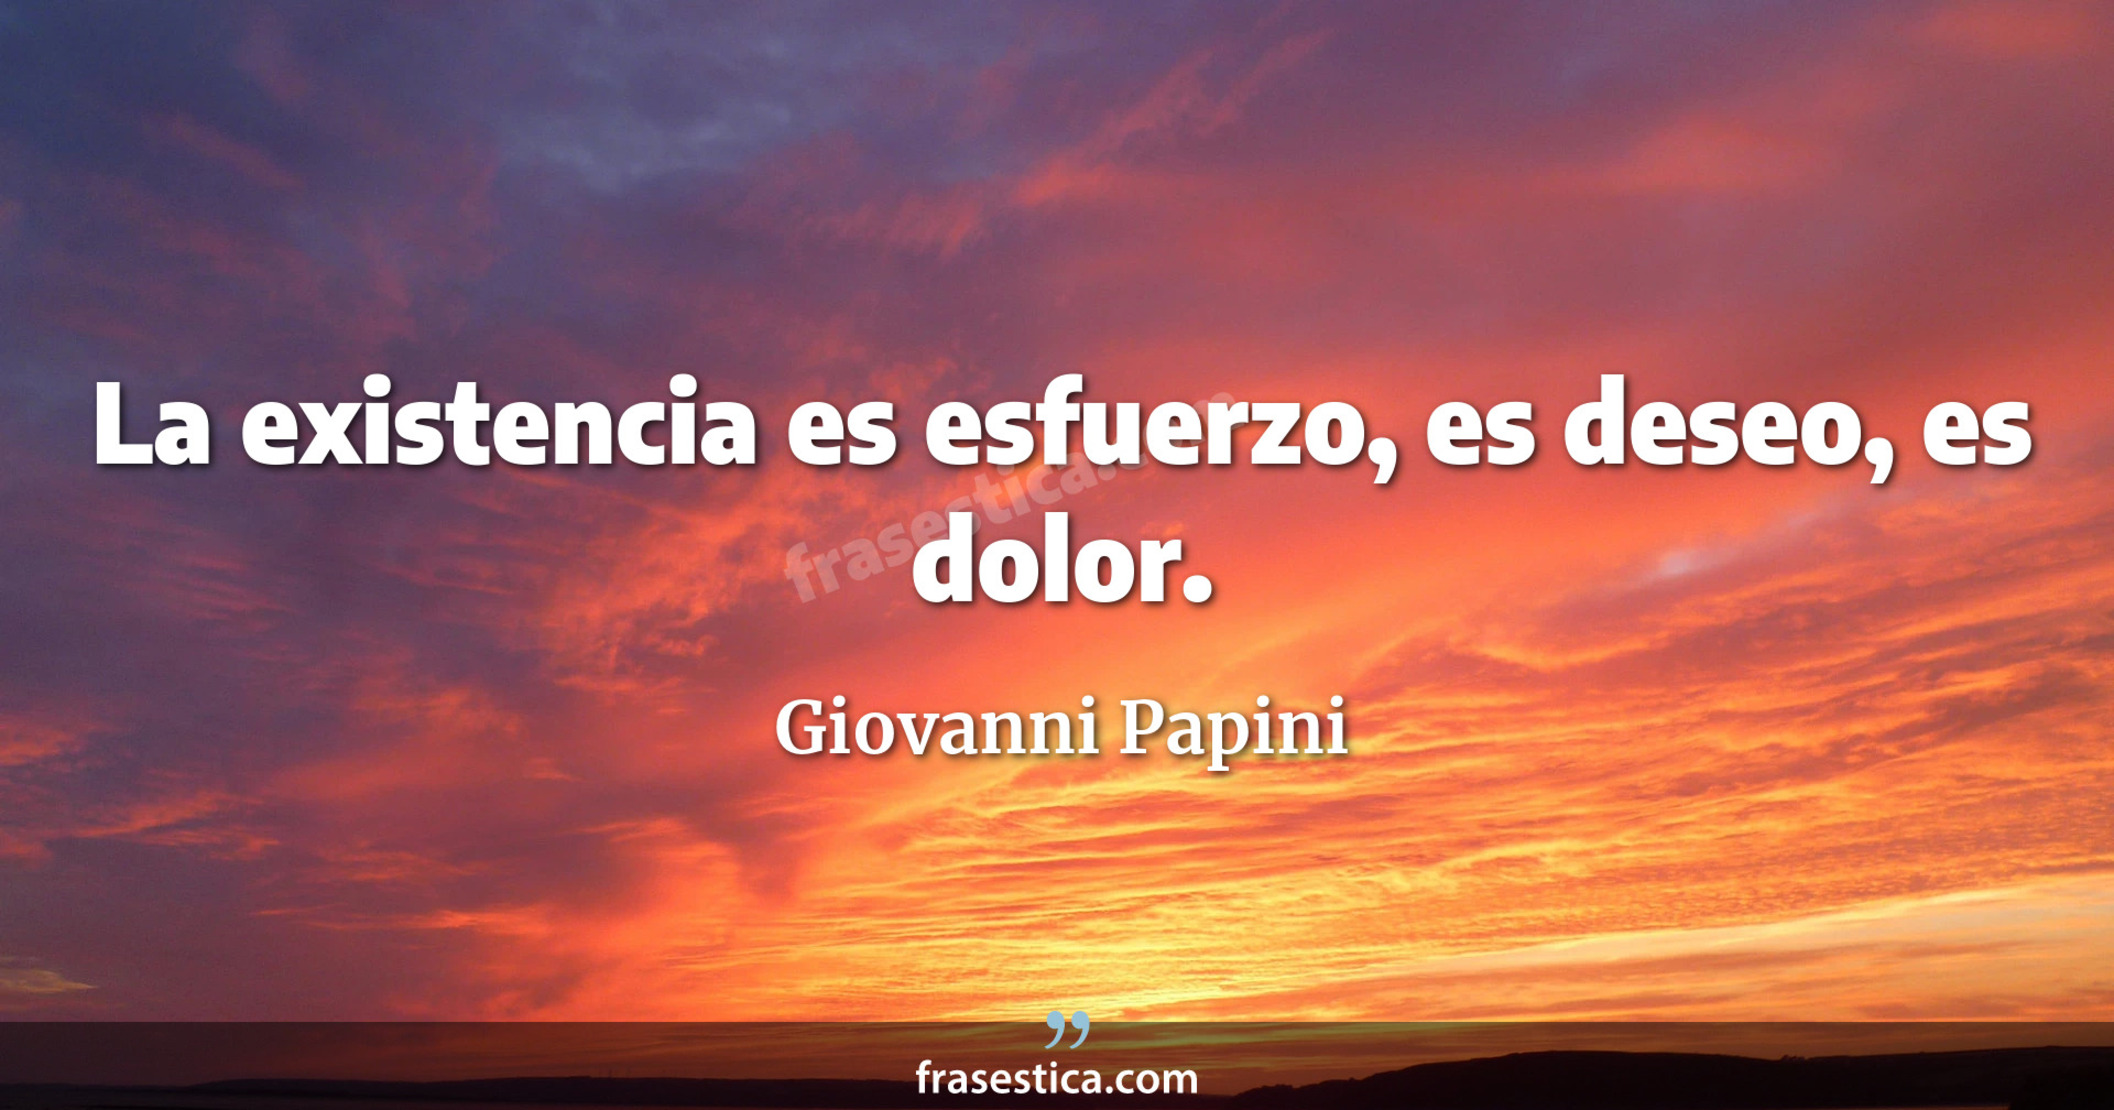 La existencia es esfuerzo, es deseo, es dolor. - Giovanni Papini